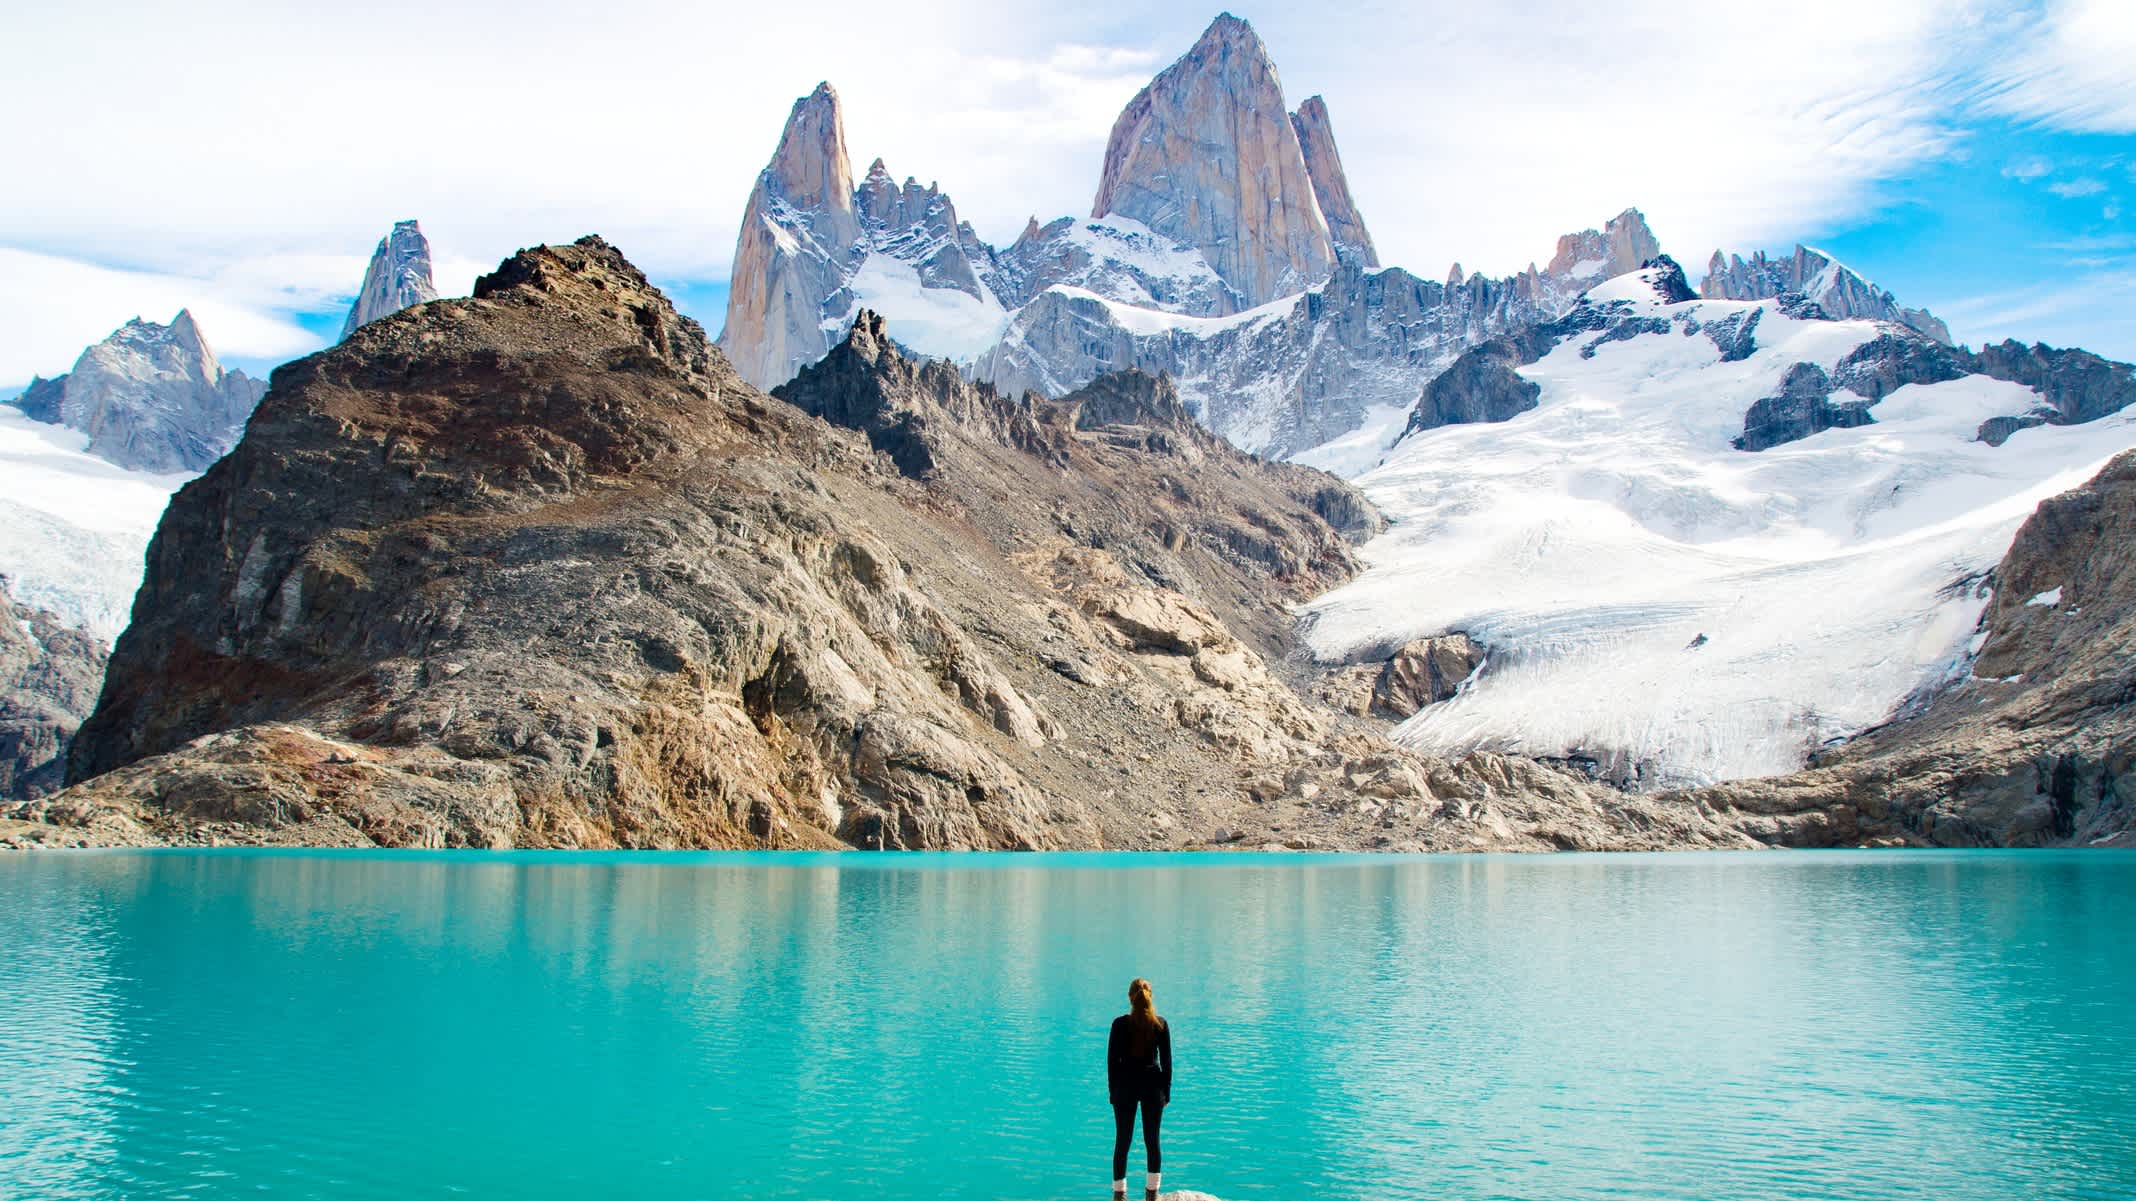 Personne devant de l'eau et des montagnes en Patagonie, Chili.

